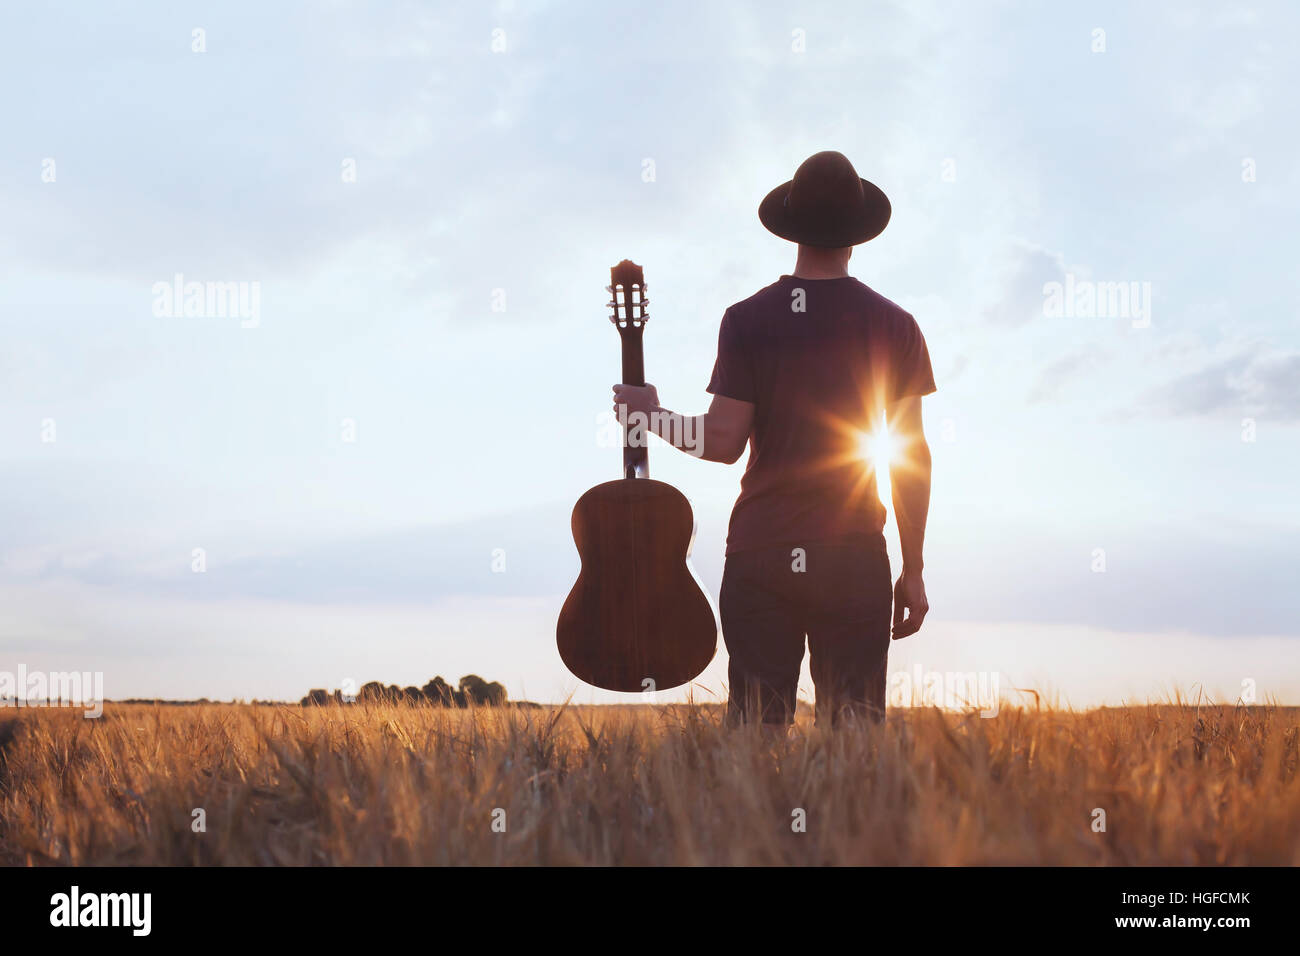 Musik Festival Hintergrund, Silhouette der Musiker Künstler mit akustischer Gitarre bei Sonnenuntergang Feld Stockfoto